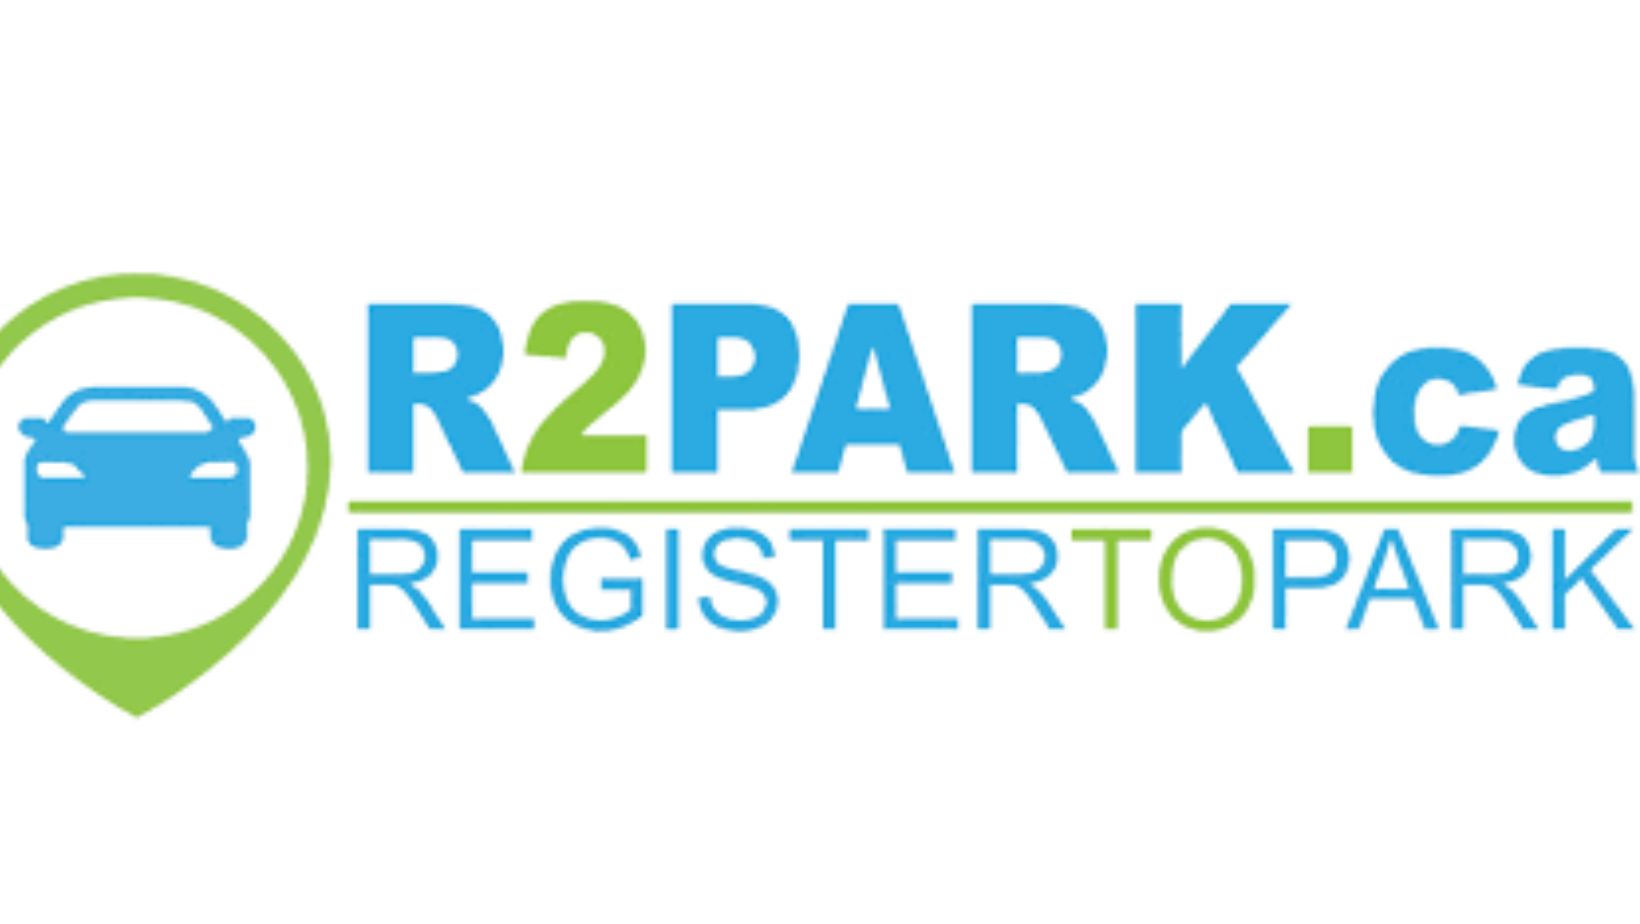 r2park.com guest parking